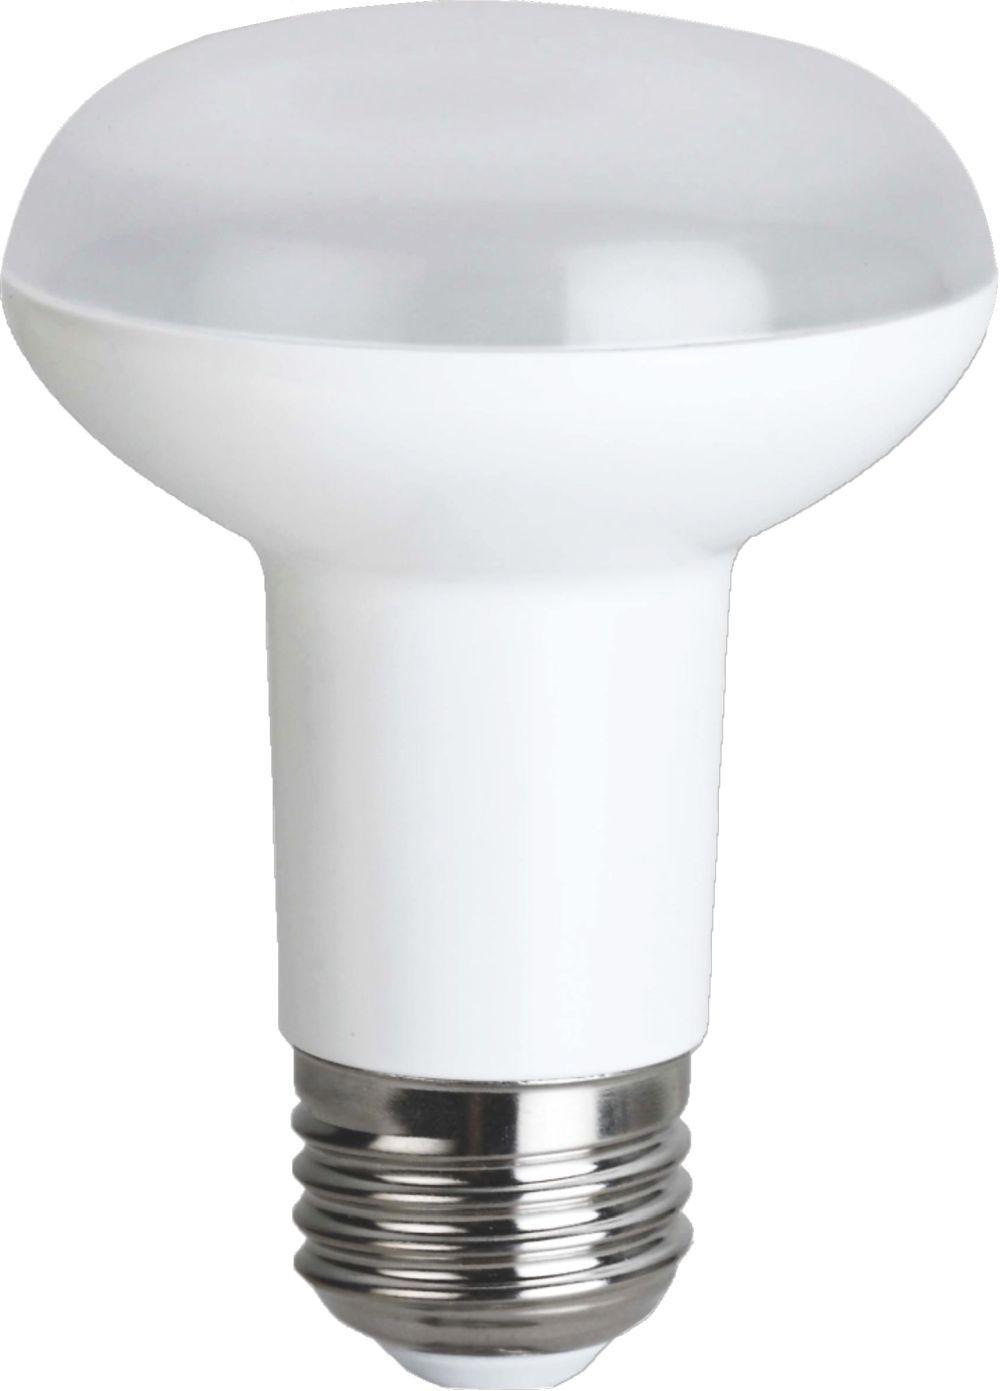 90121181 Лампа Premium светодионая E27 12.50 Вт рефлекторная 1120 Лм нейтральный свет STLM-0112370 ECOLA